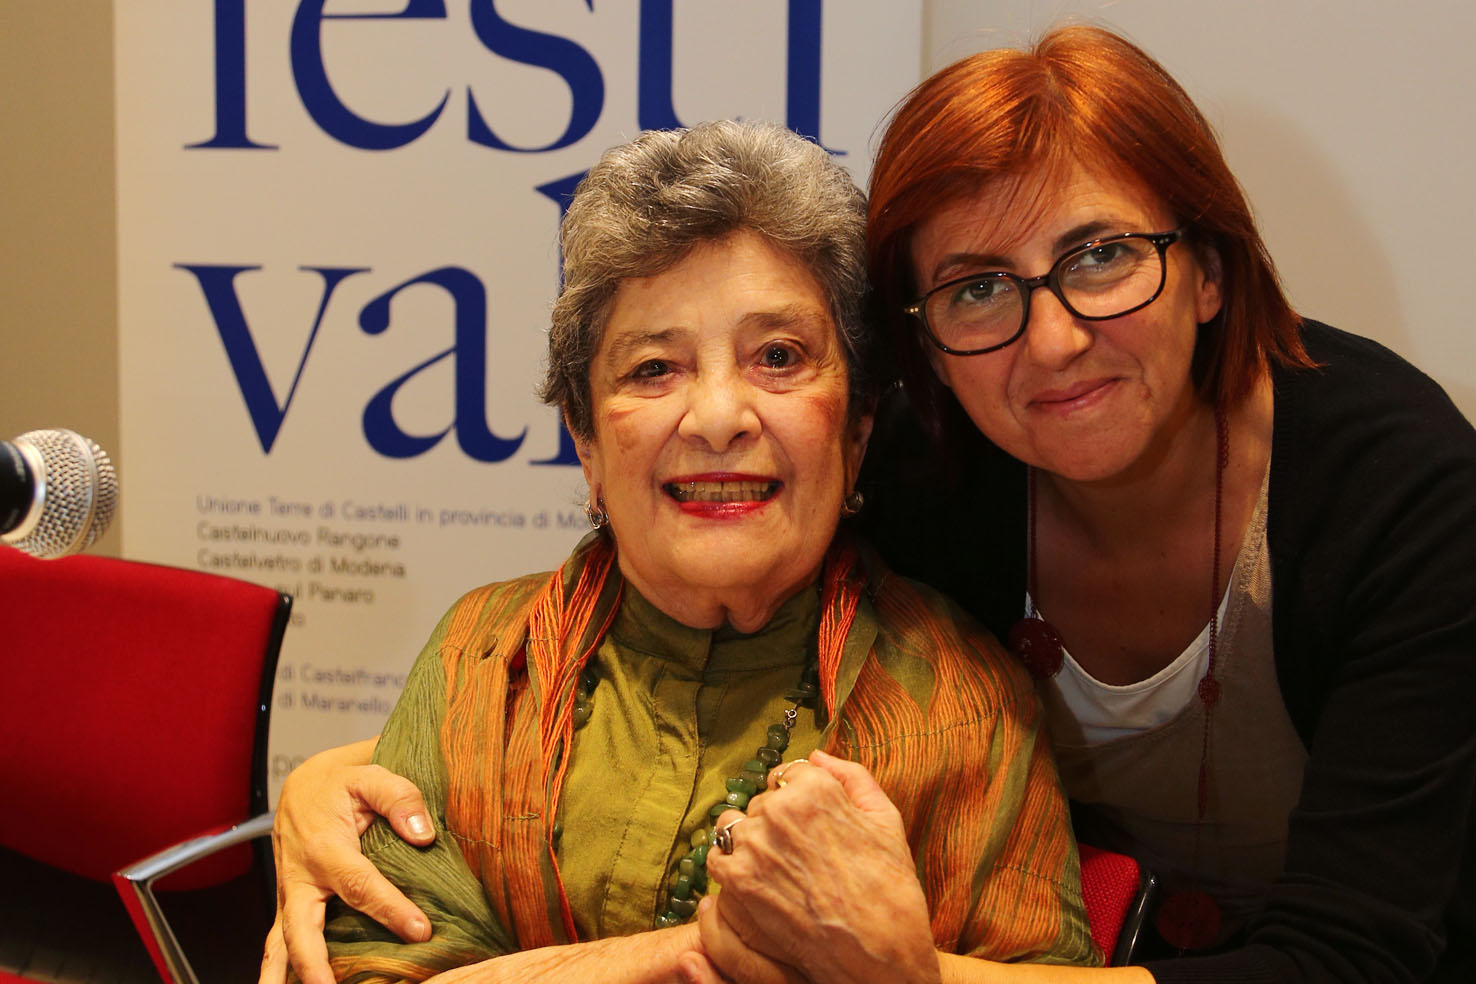 Claribel Alegrìa con Lucia Bursi sindaco di Maranello all’ incontro con i poeti al MABIC di Maranello. ph. © Serena Campanini